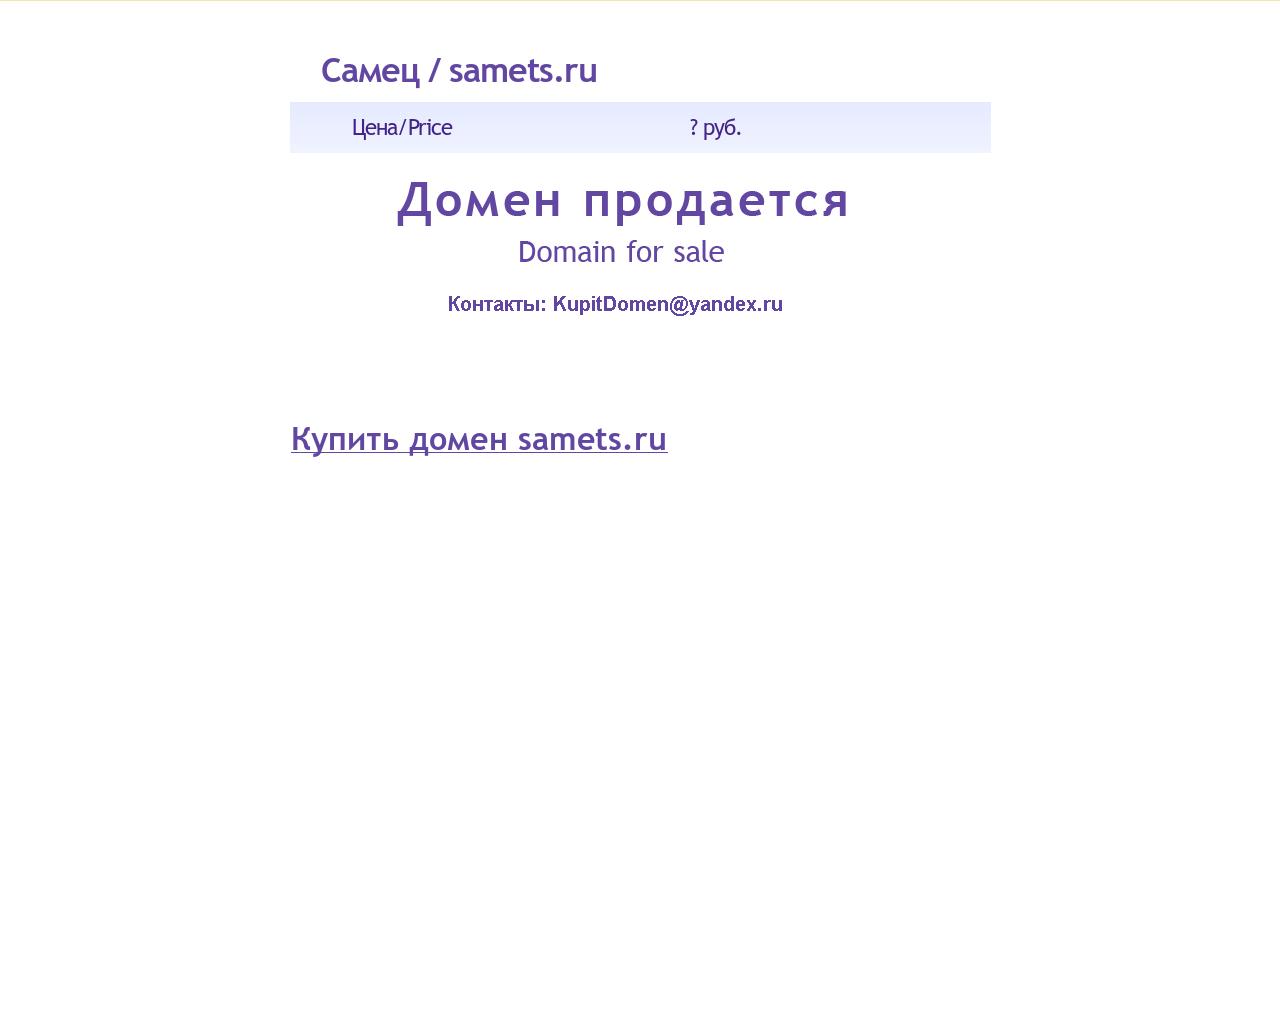 Изображение сайта samets.ru в разрешении 1280x1024